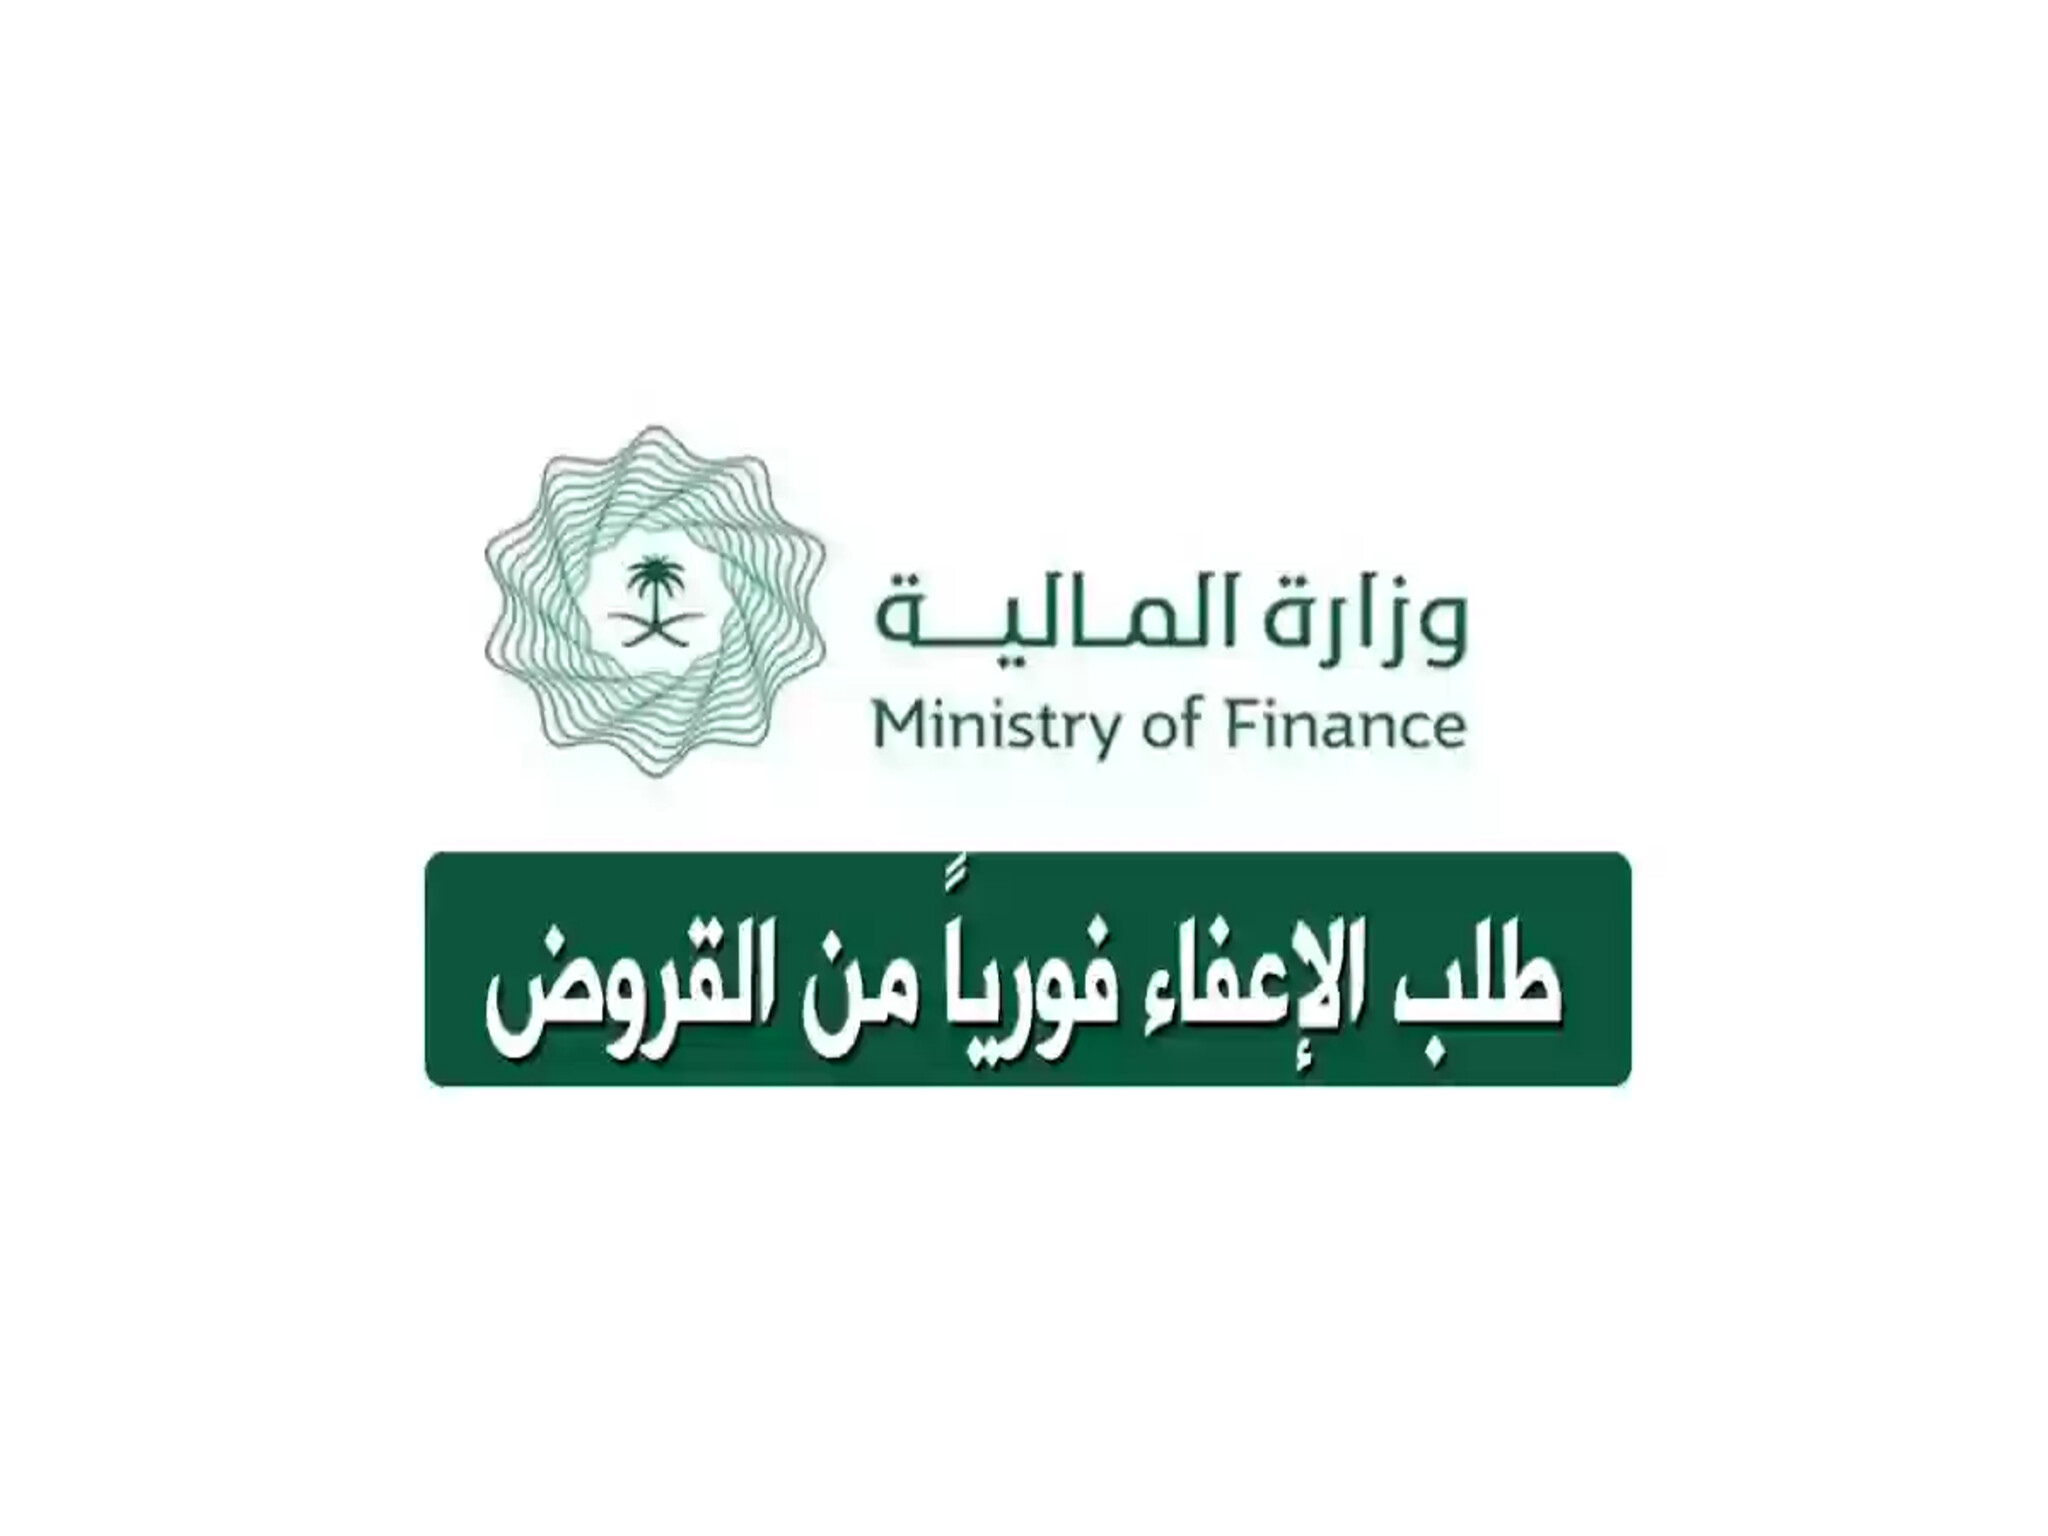 وزارة المالية توضح خطوات التقديم علي طلب الإعفاء من القروض 1446هـ وأهم الشروط